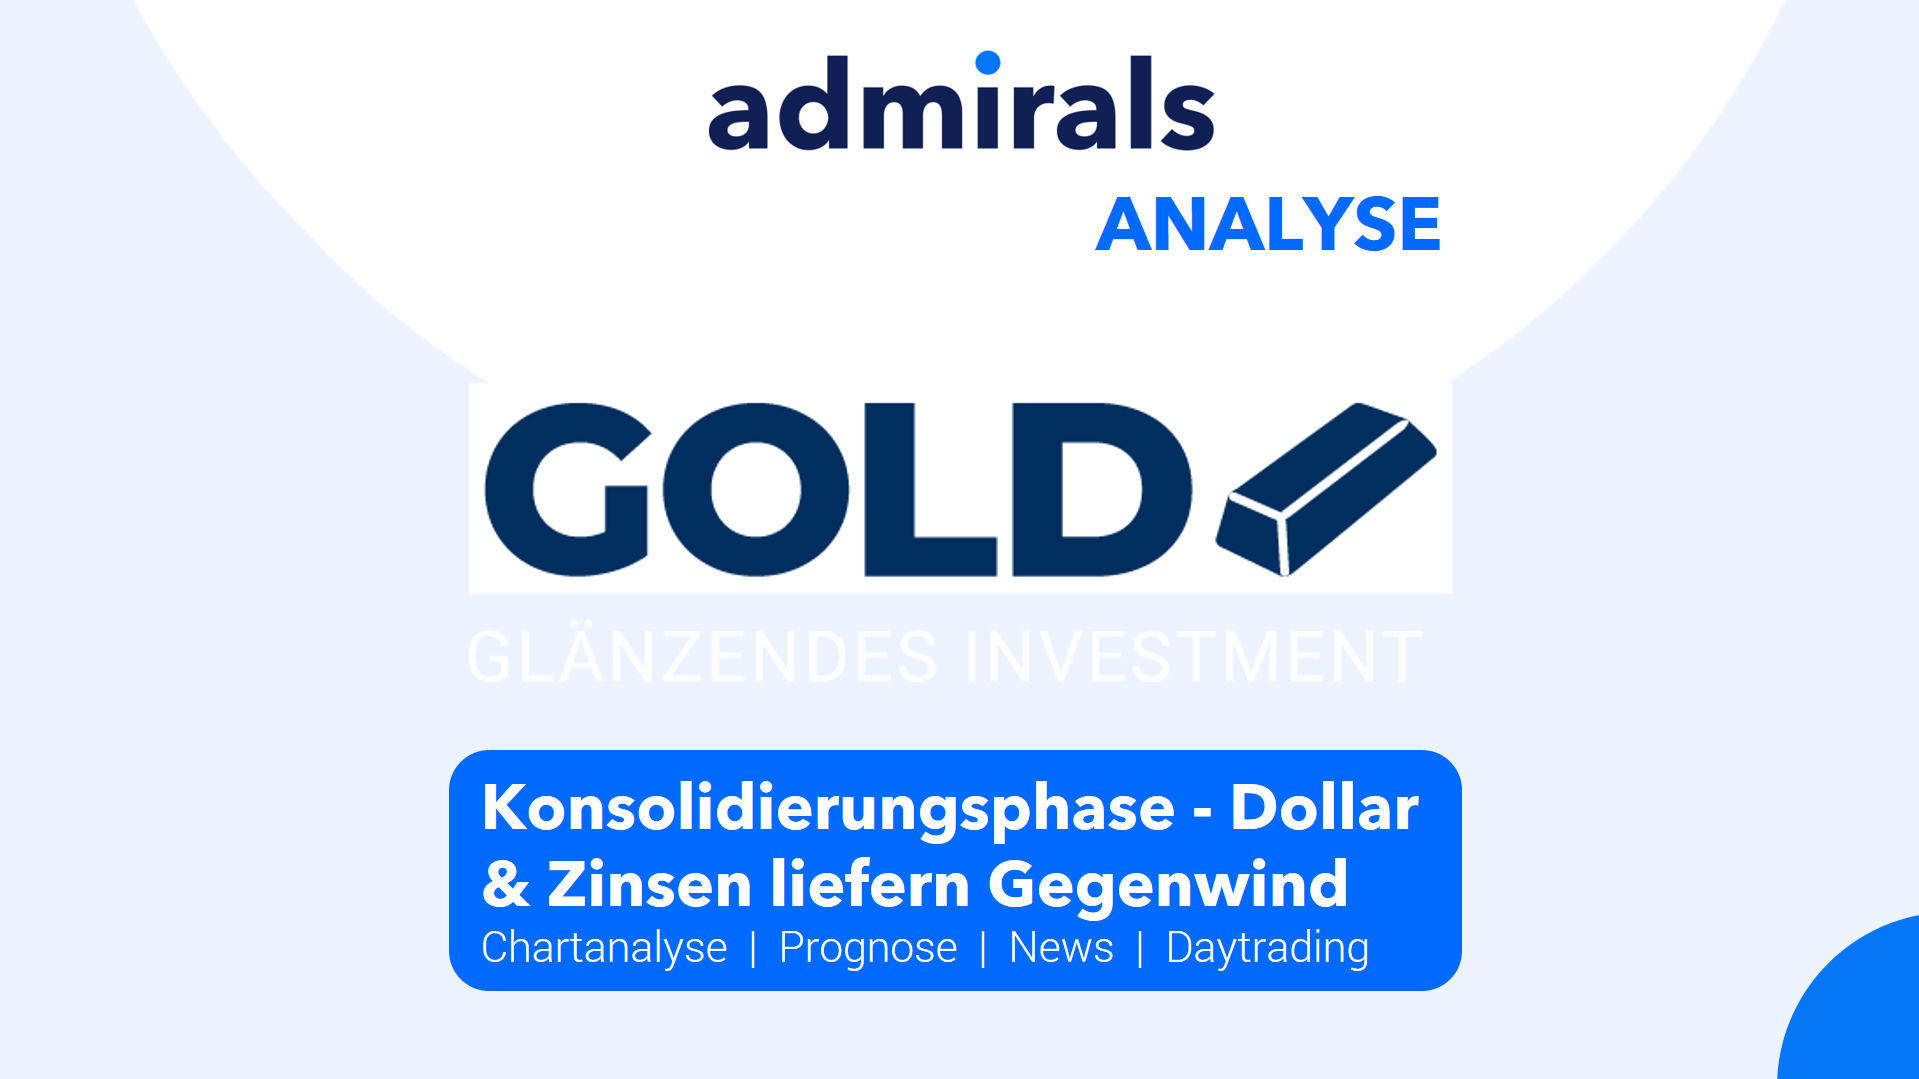 Gold-Wochenausblick-Nach-guter-Wochenperformance-in-Konsolidierungsphase-Dollar-und-Zinsen-liefern-wieder-Gegenwind-Kommentar-Admirals-GodmodeTrader.de-1